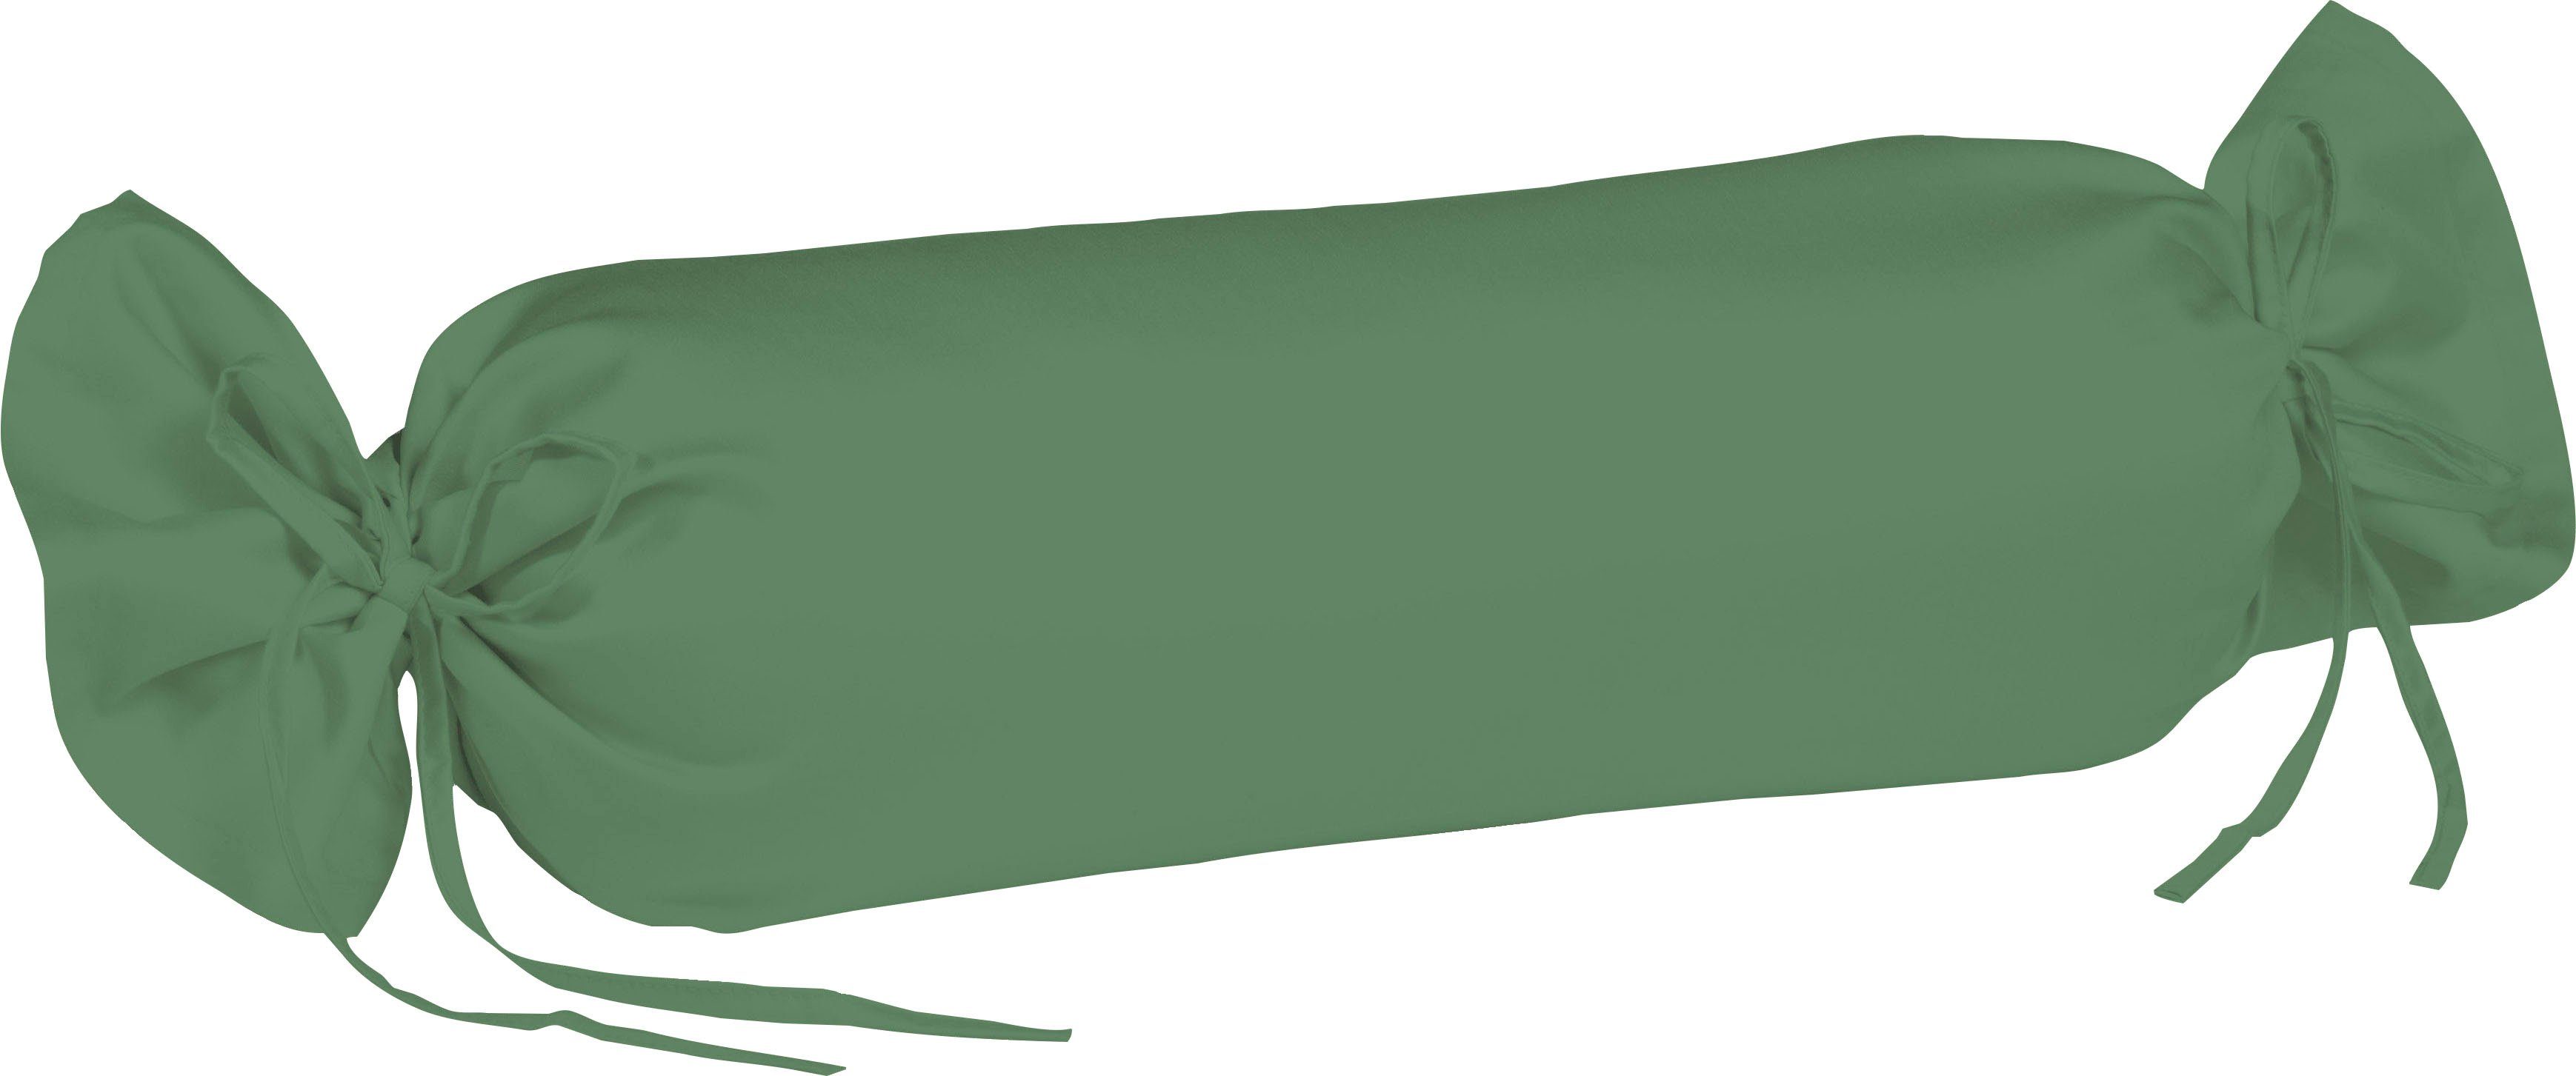 fleuresse sluimerrol-overtrek colours mako satijn, glanzend, glad, topkwaliteit (2 stuks) groen